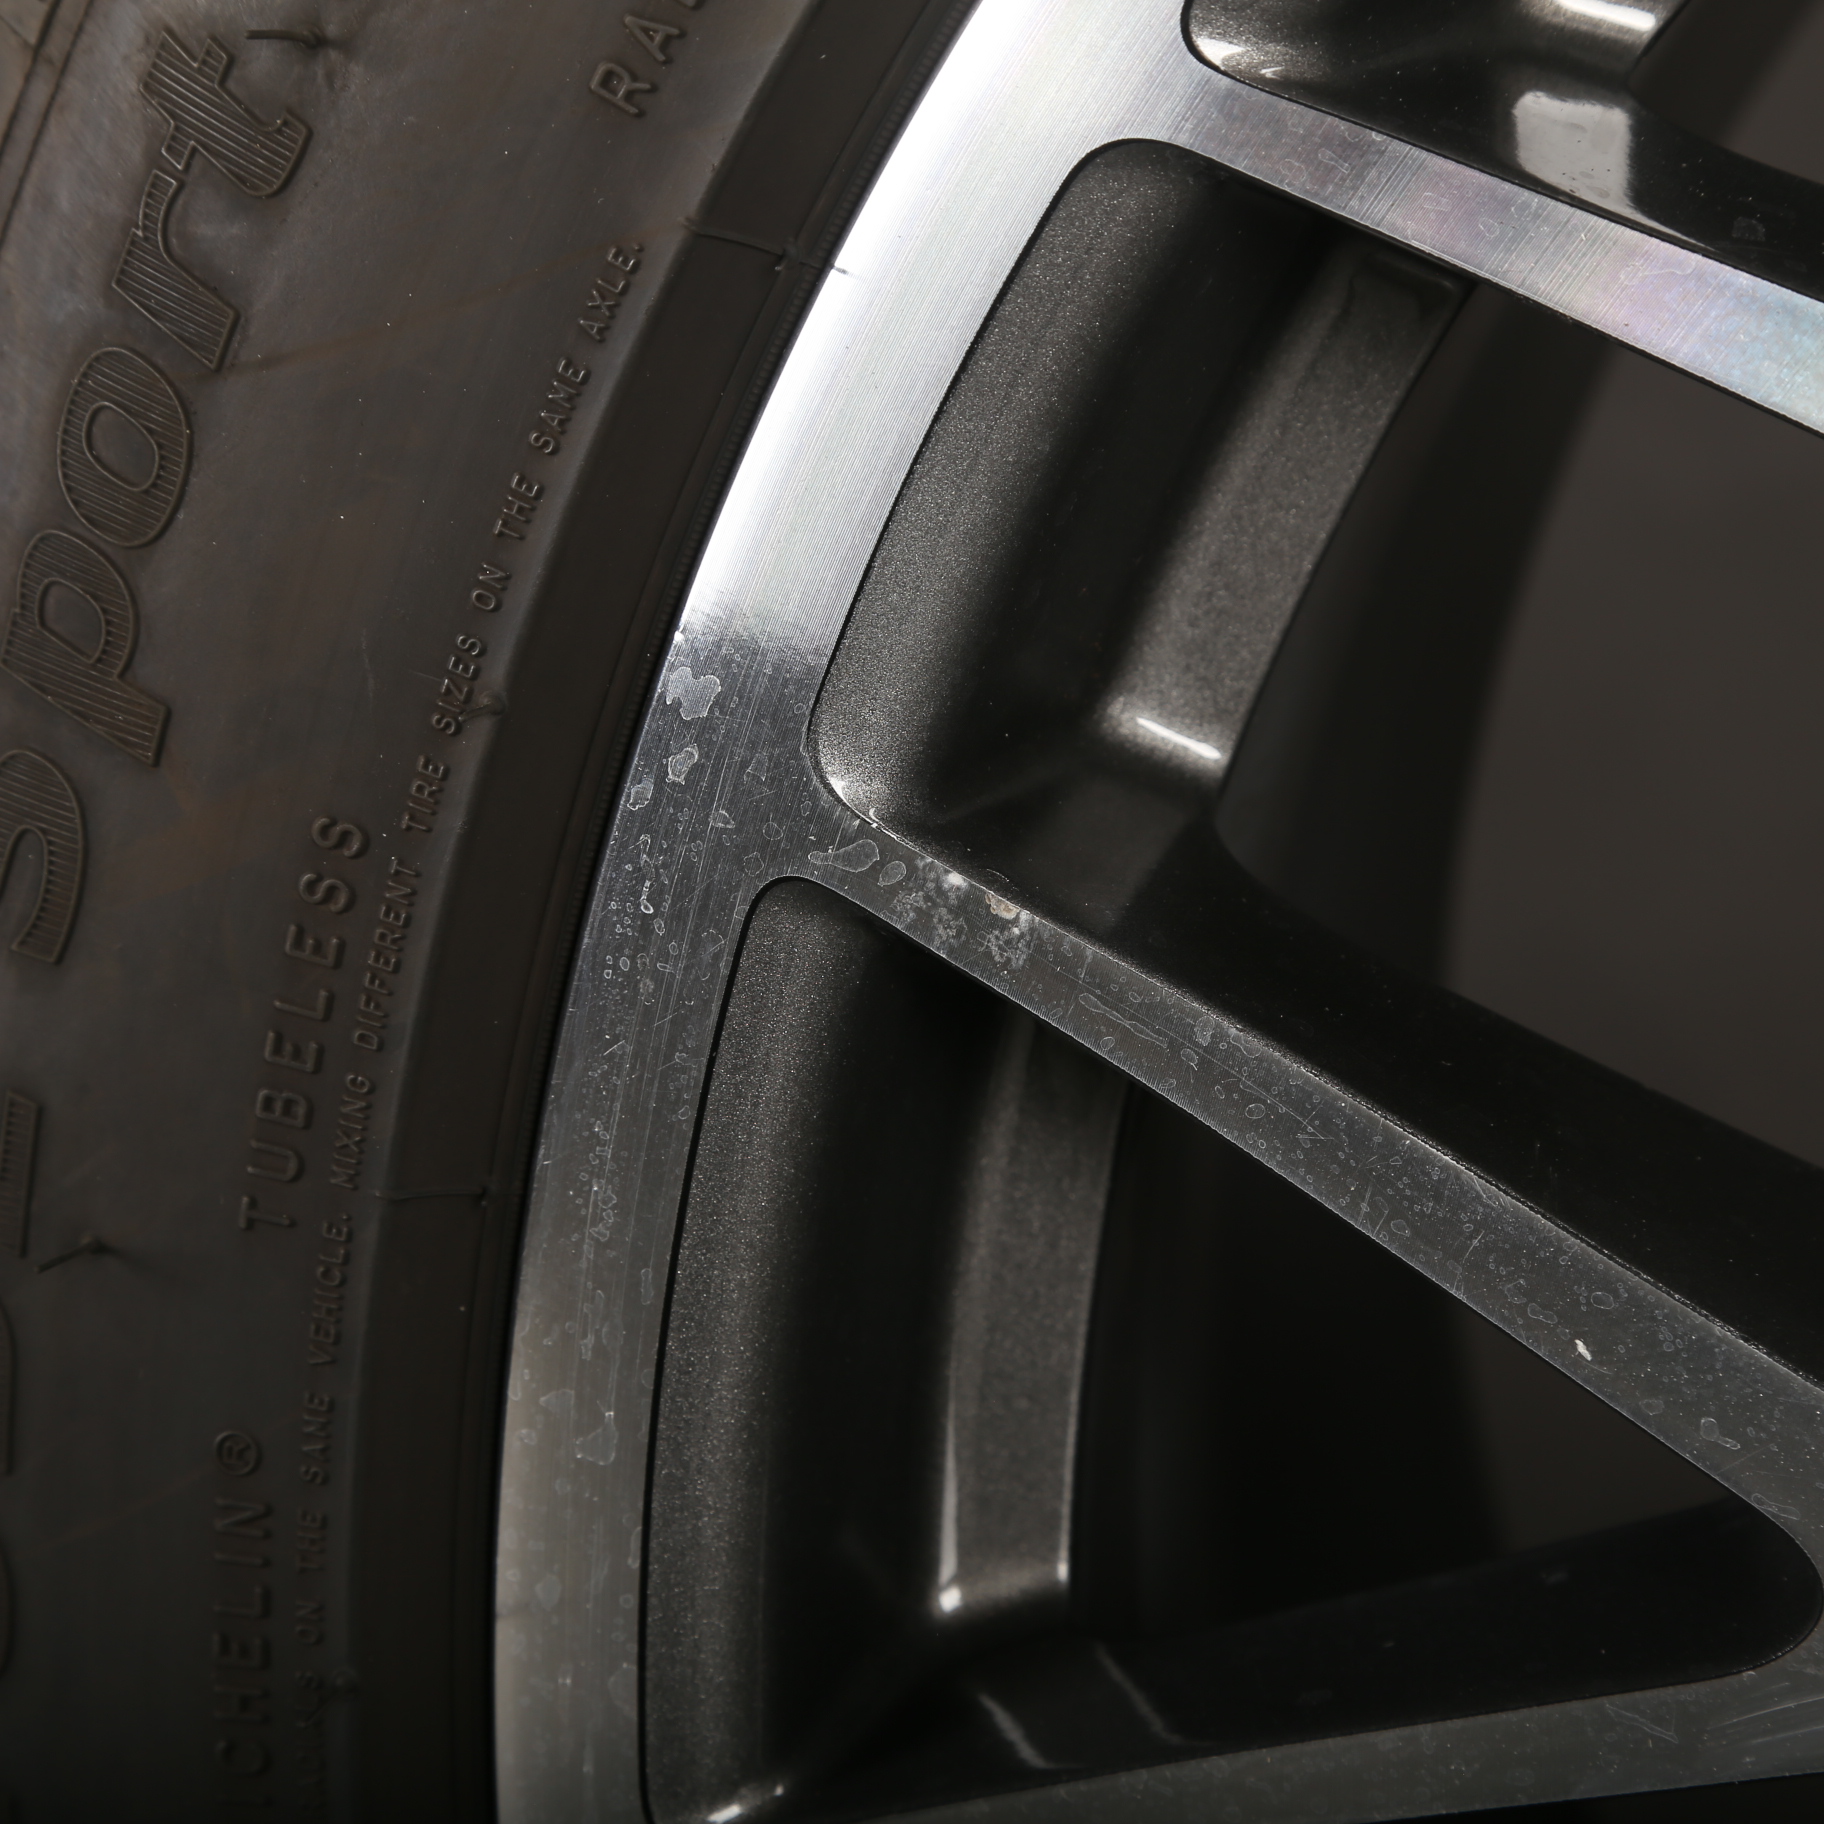 20 pouces roues d'été d'origine Porsche Macan RS Spyder 95B 95B601025BF / BG